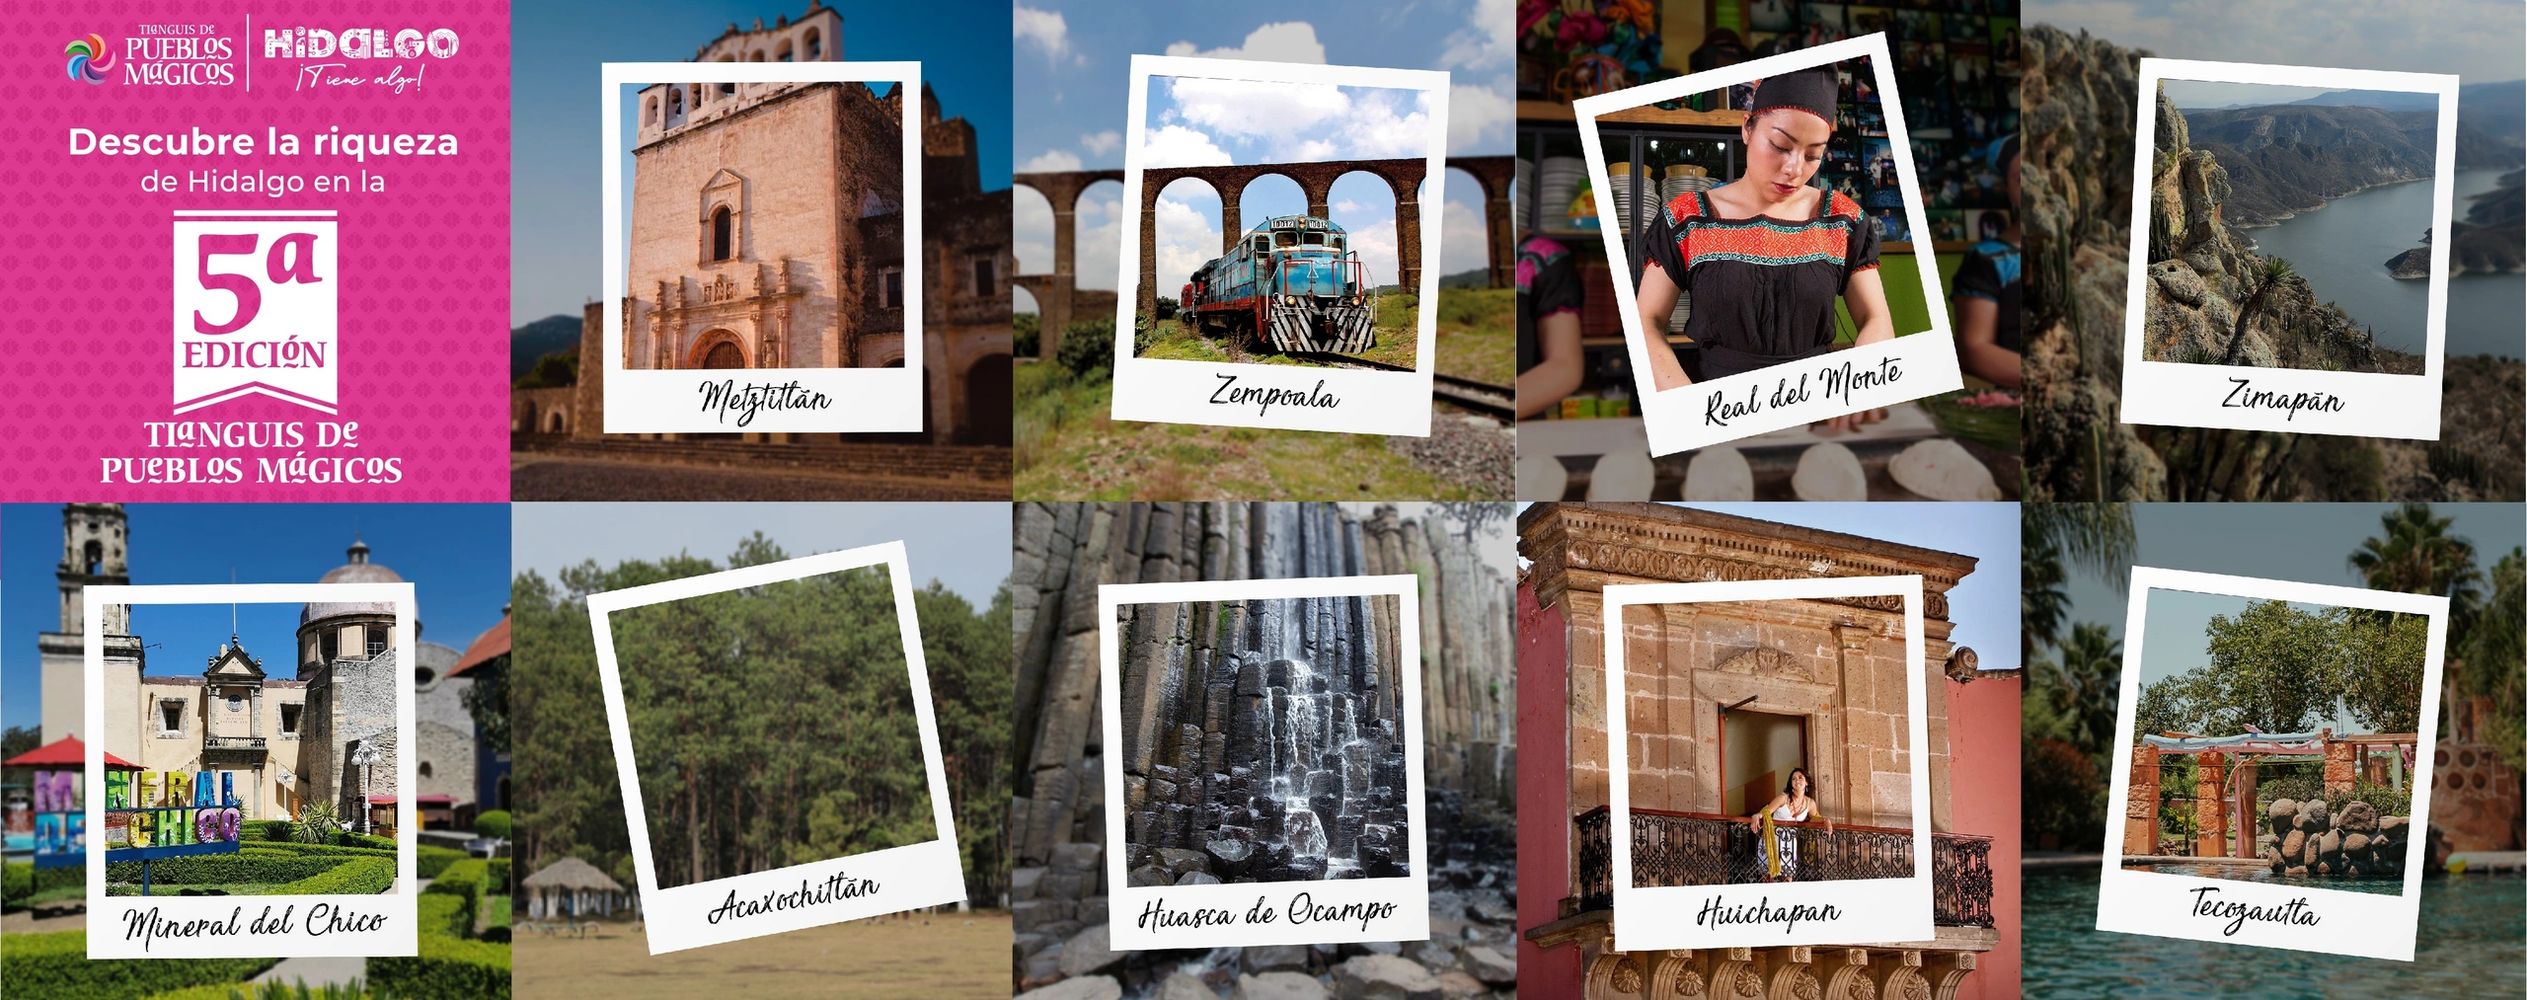 foto alusiva a  los 9 pueblos mágicos  del Estado de Hidalgo